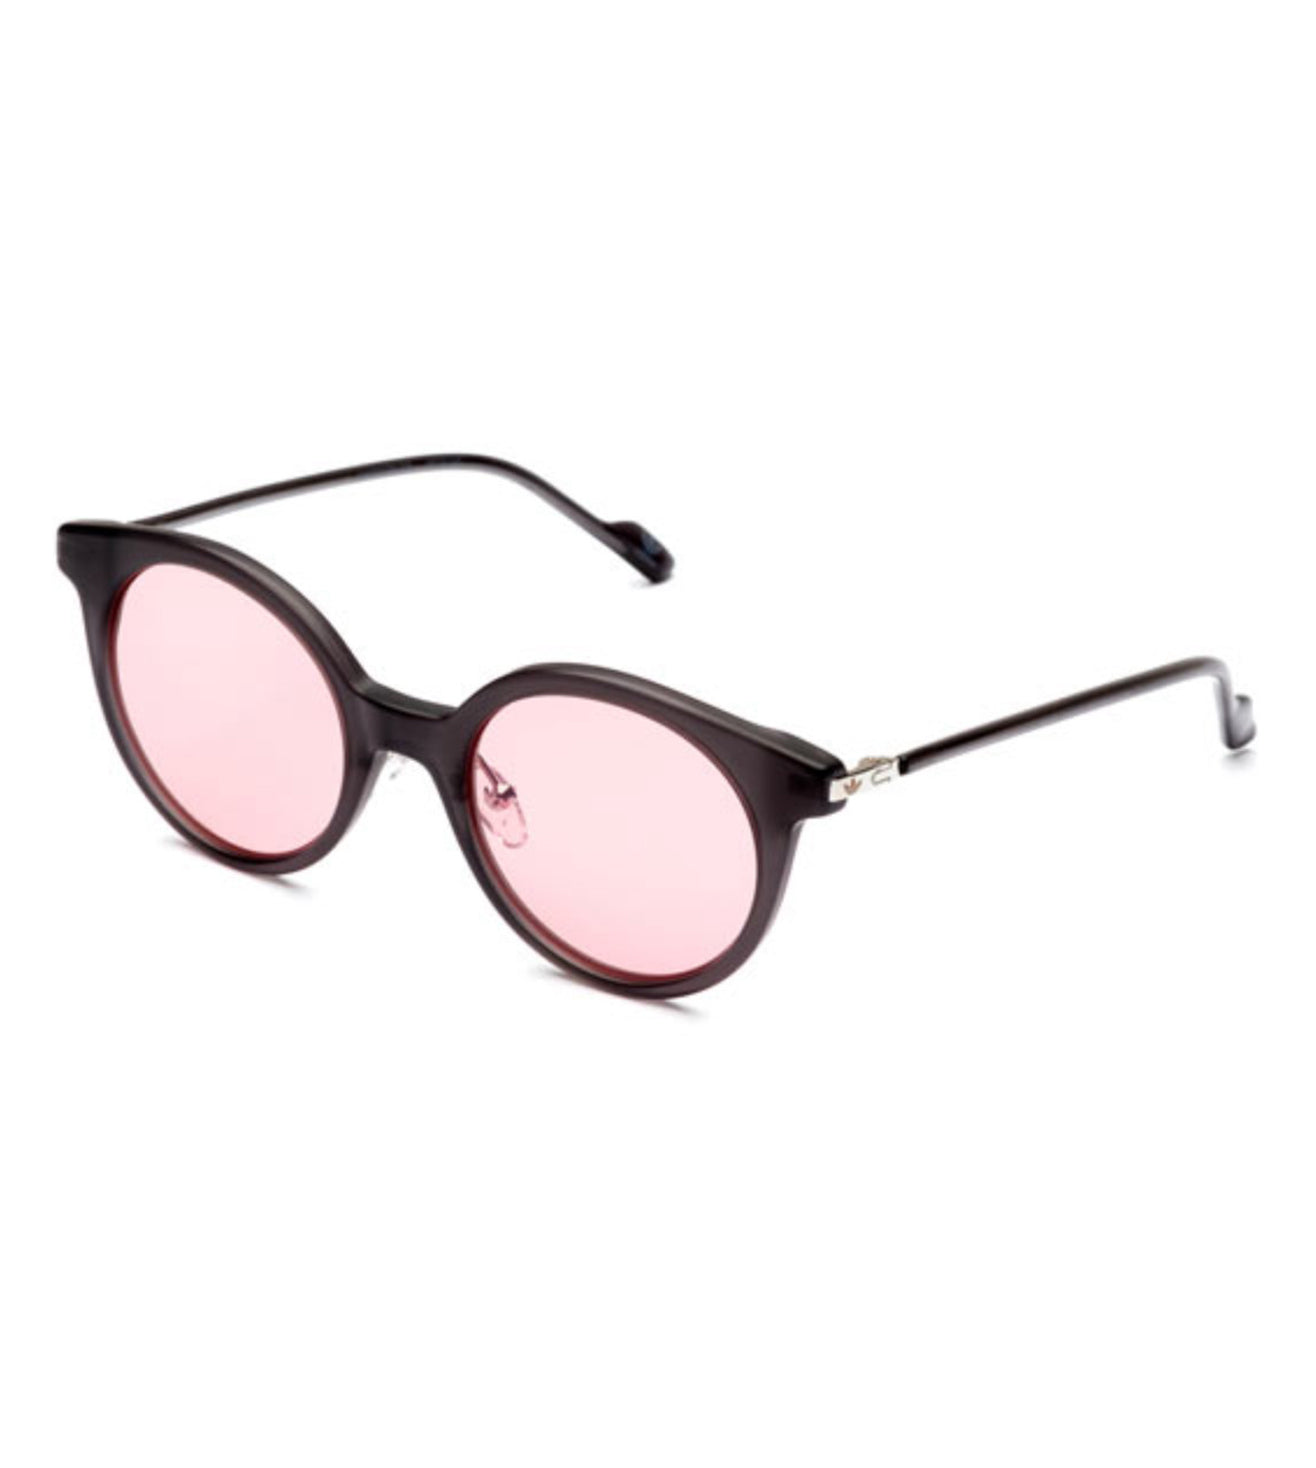 Adidas Originals Unisex Pink Round Sunglasses